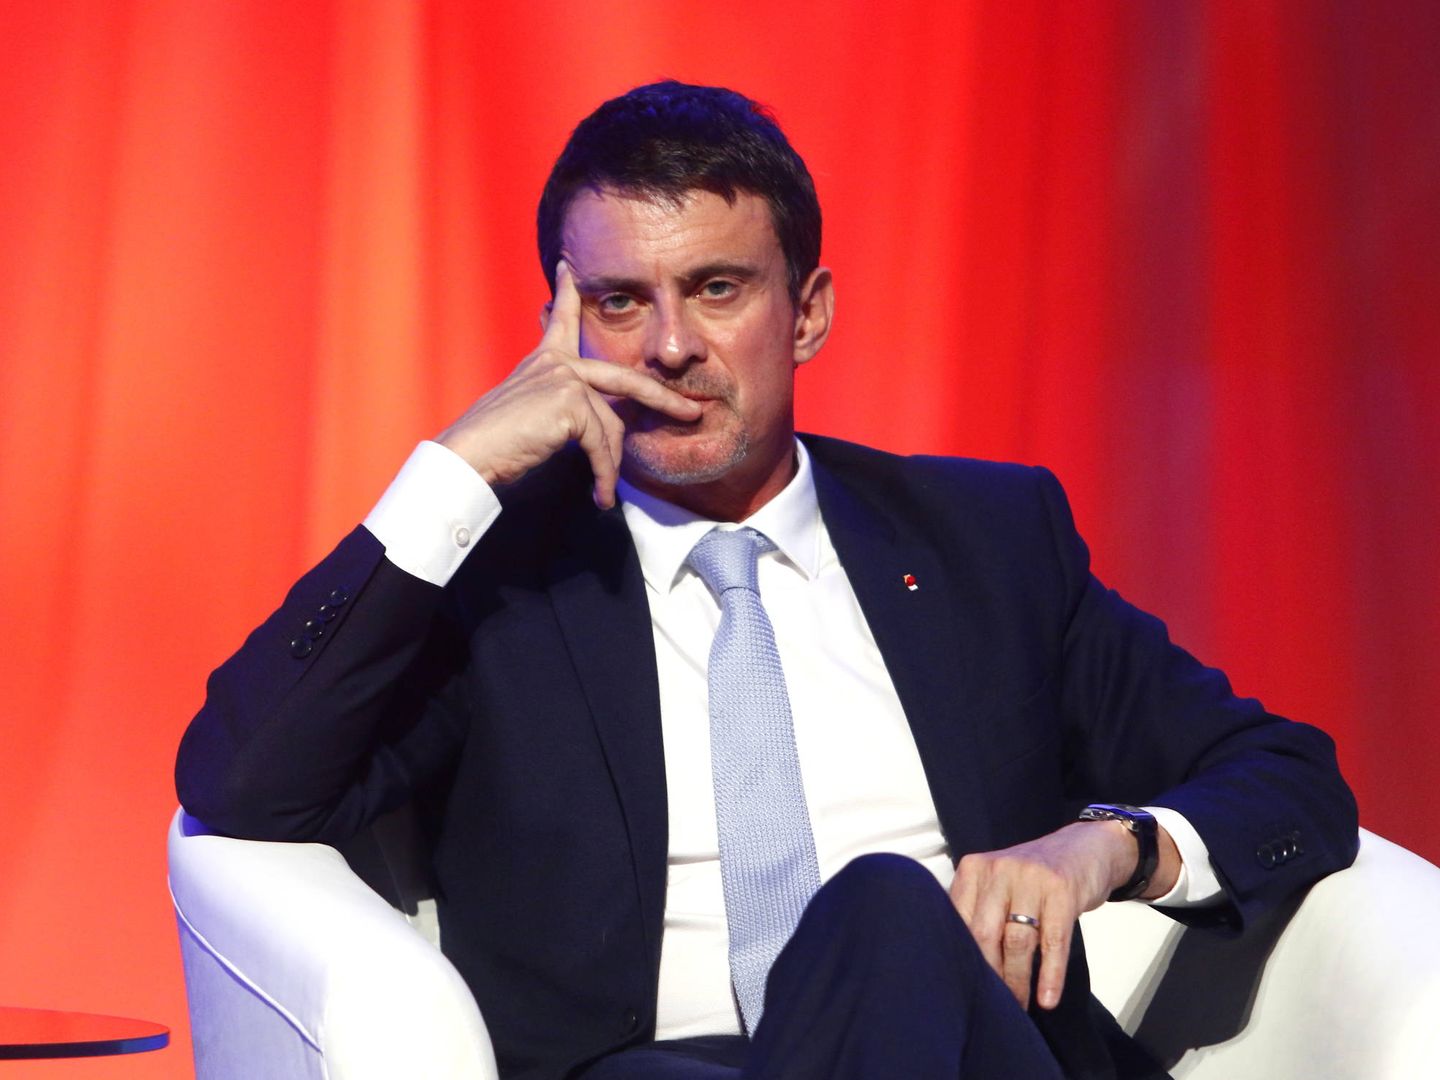 Manuel Valls en una imagen de archivo.(Gtres)